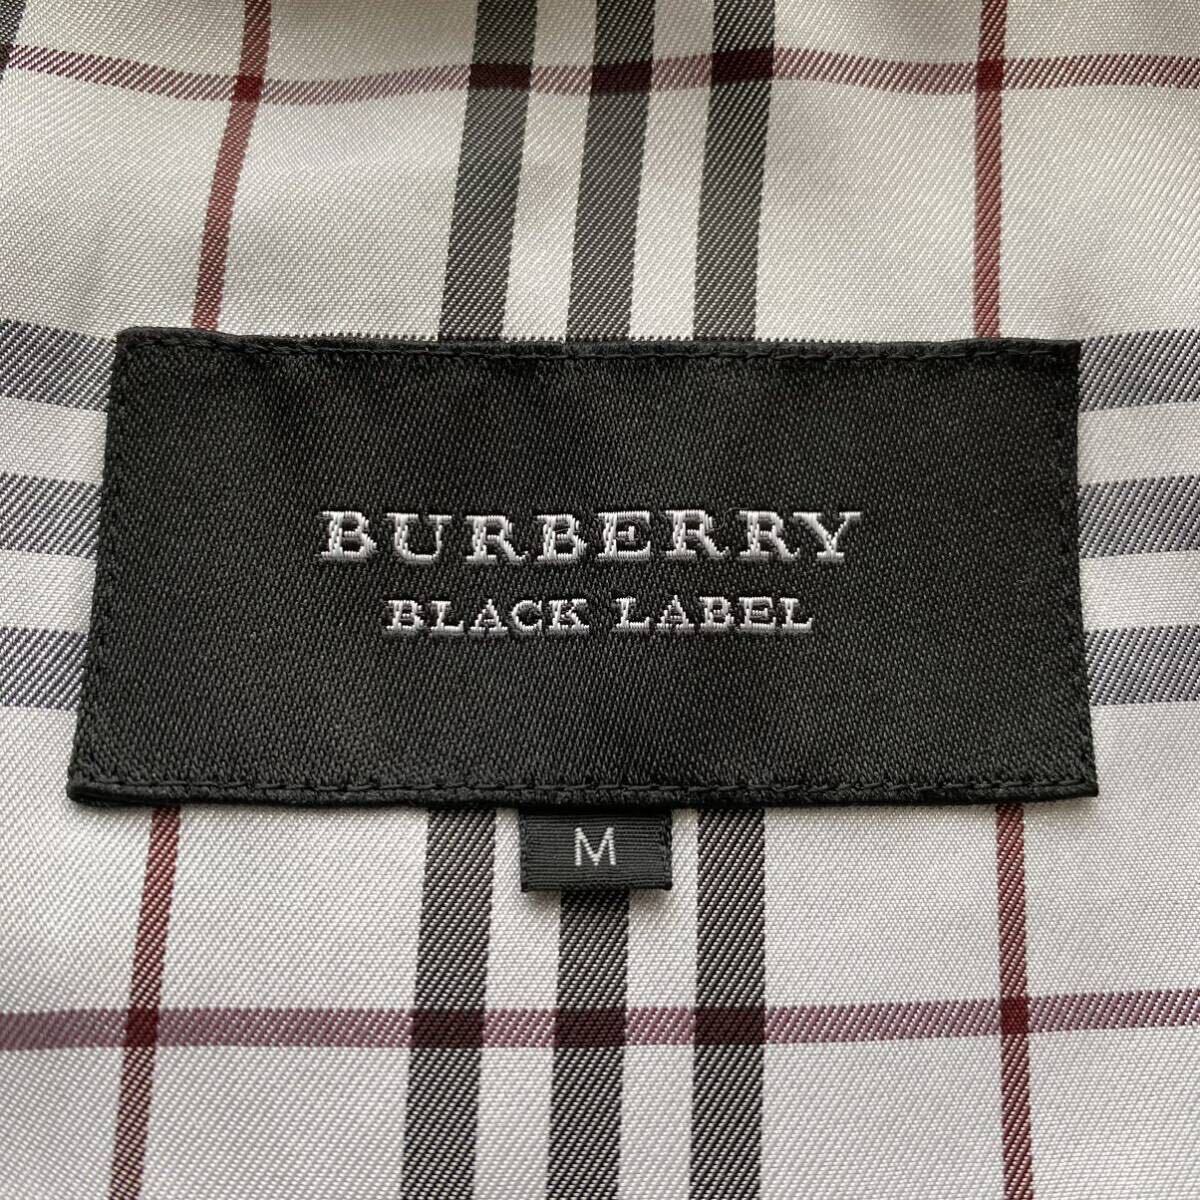  превосходный товар /BURBERRYBLACKLABEL тень проверка Burberry Black Label жакет блузон нейлон noba проверка шланг вышивка чёрный 